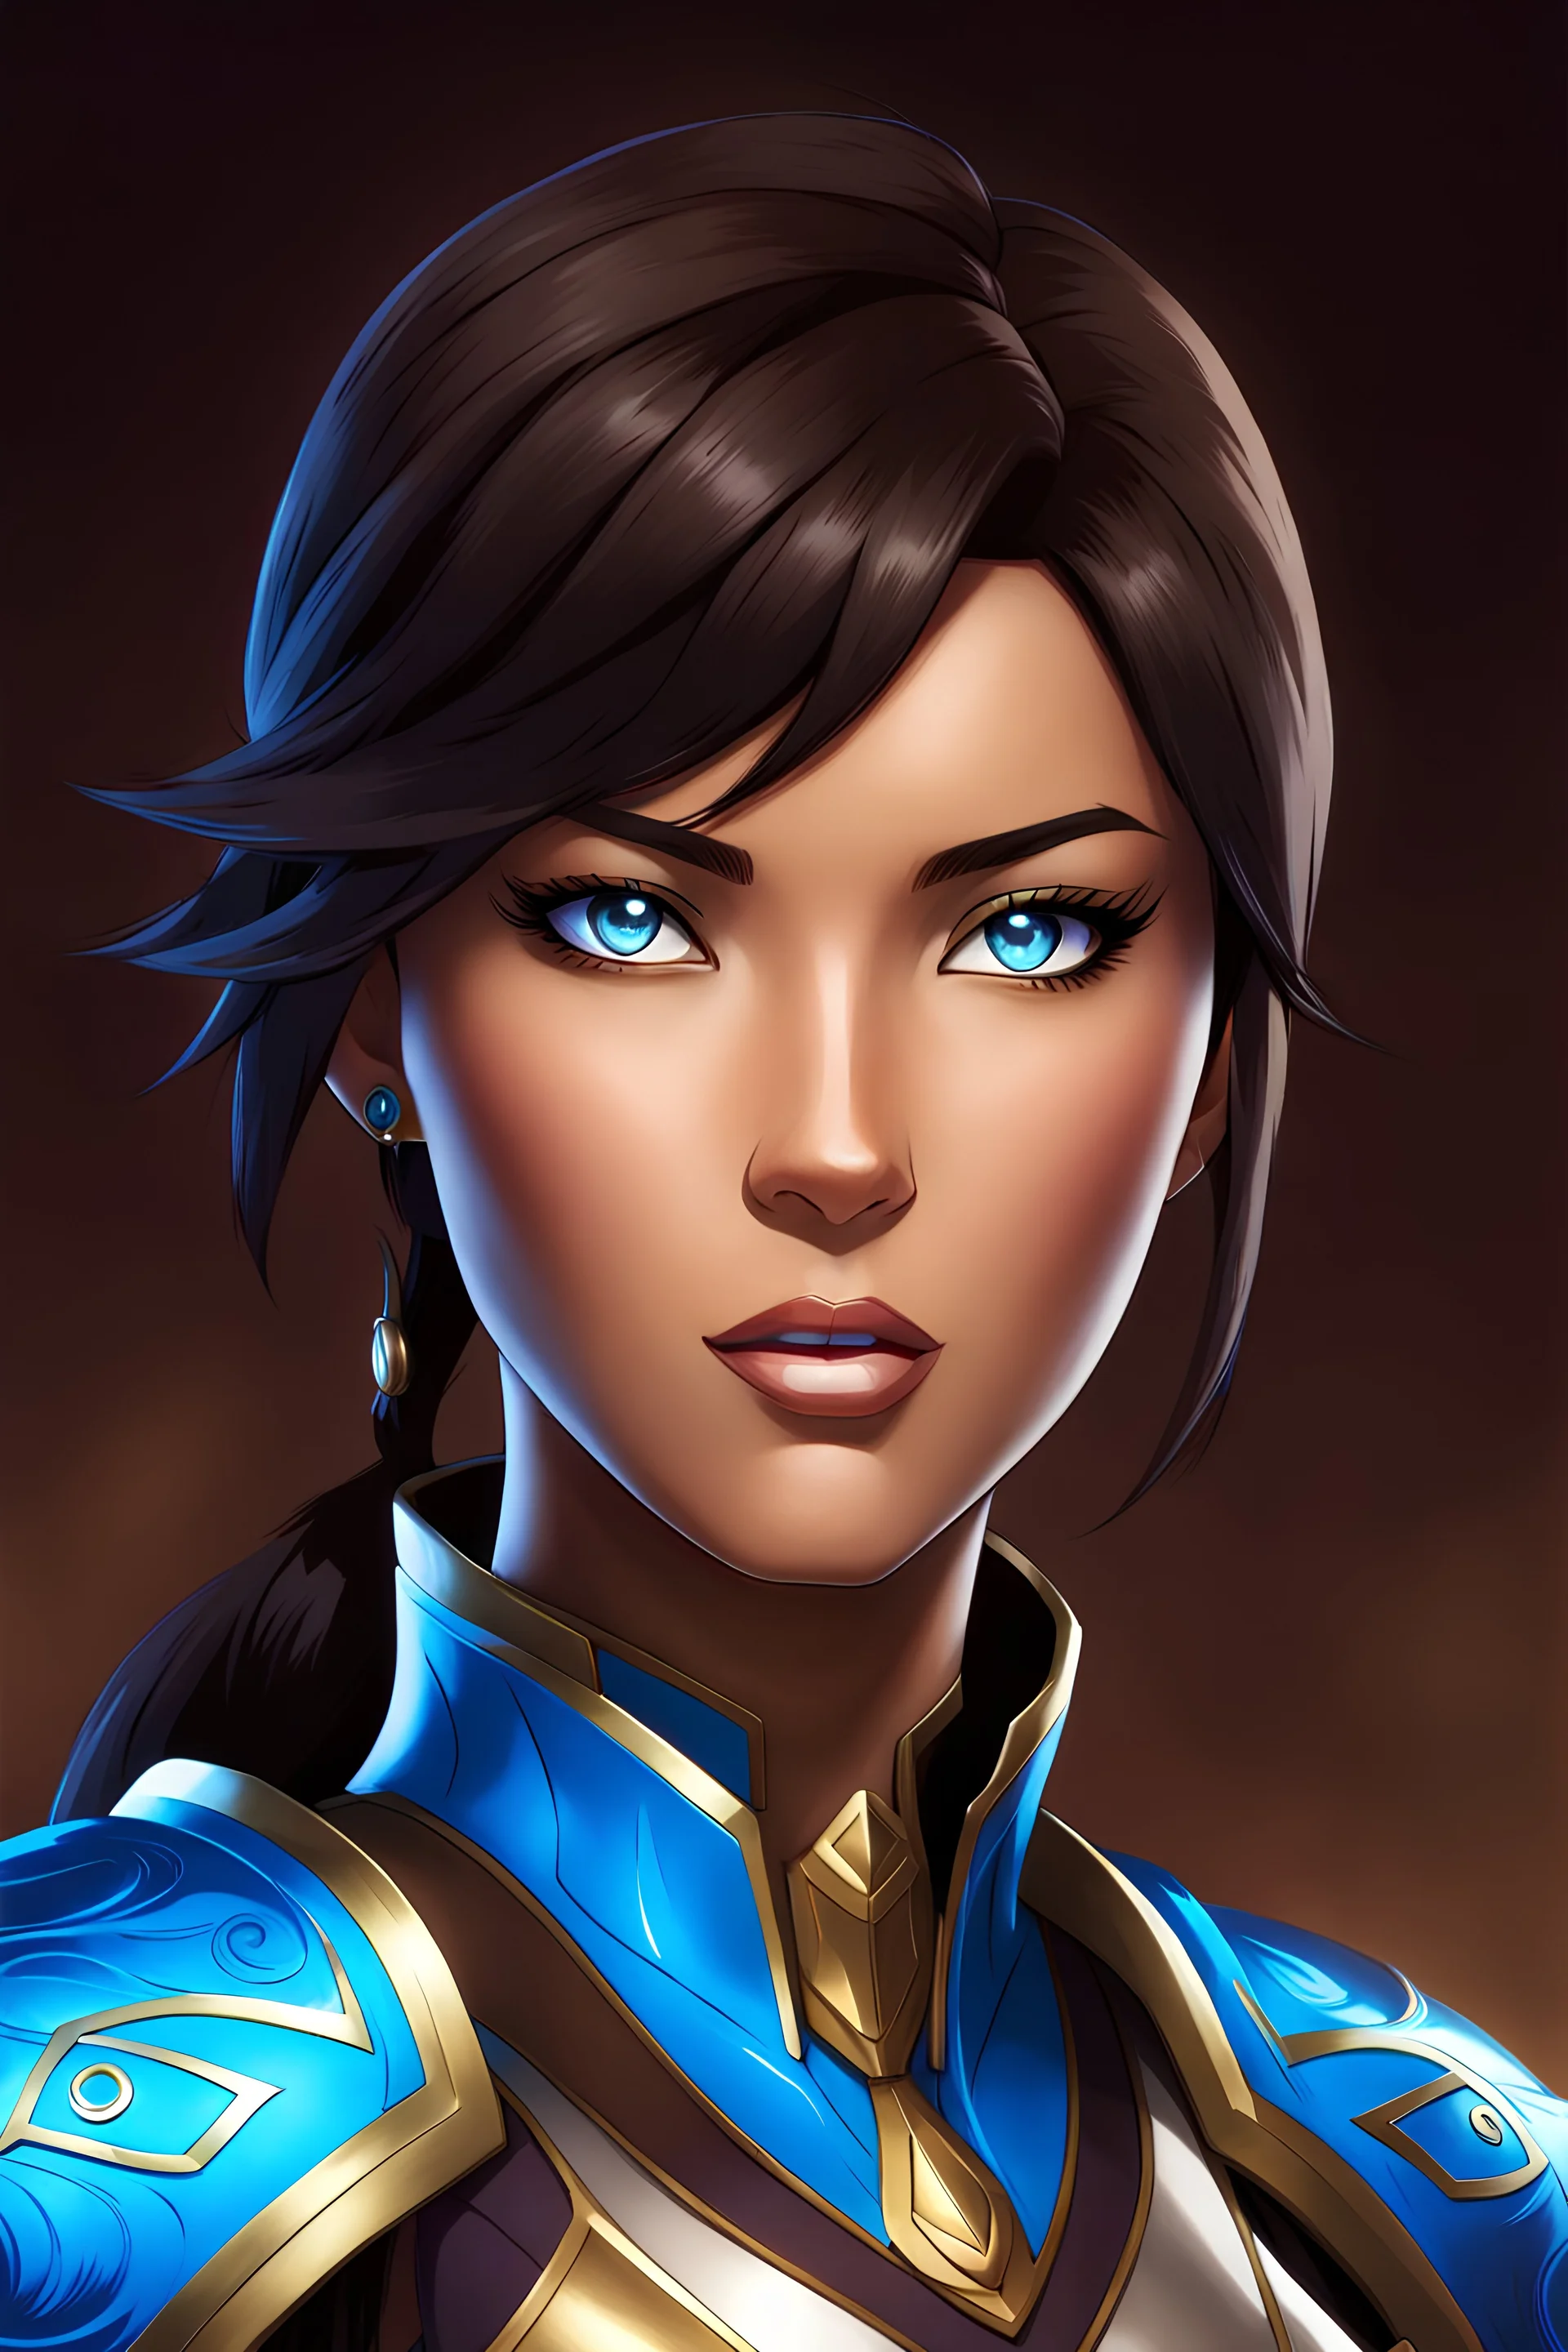 Avatar Korra, brown skin, short dark brown hair, blue eyes, woman, light armor, in the art style of Berserk